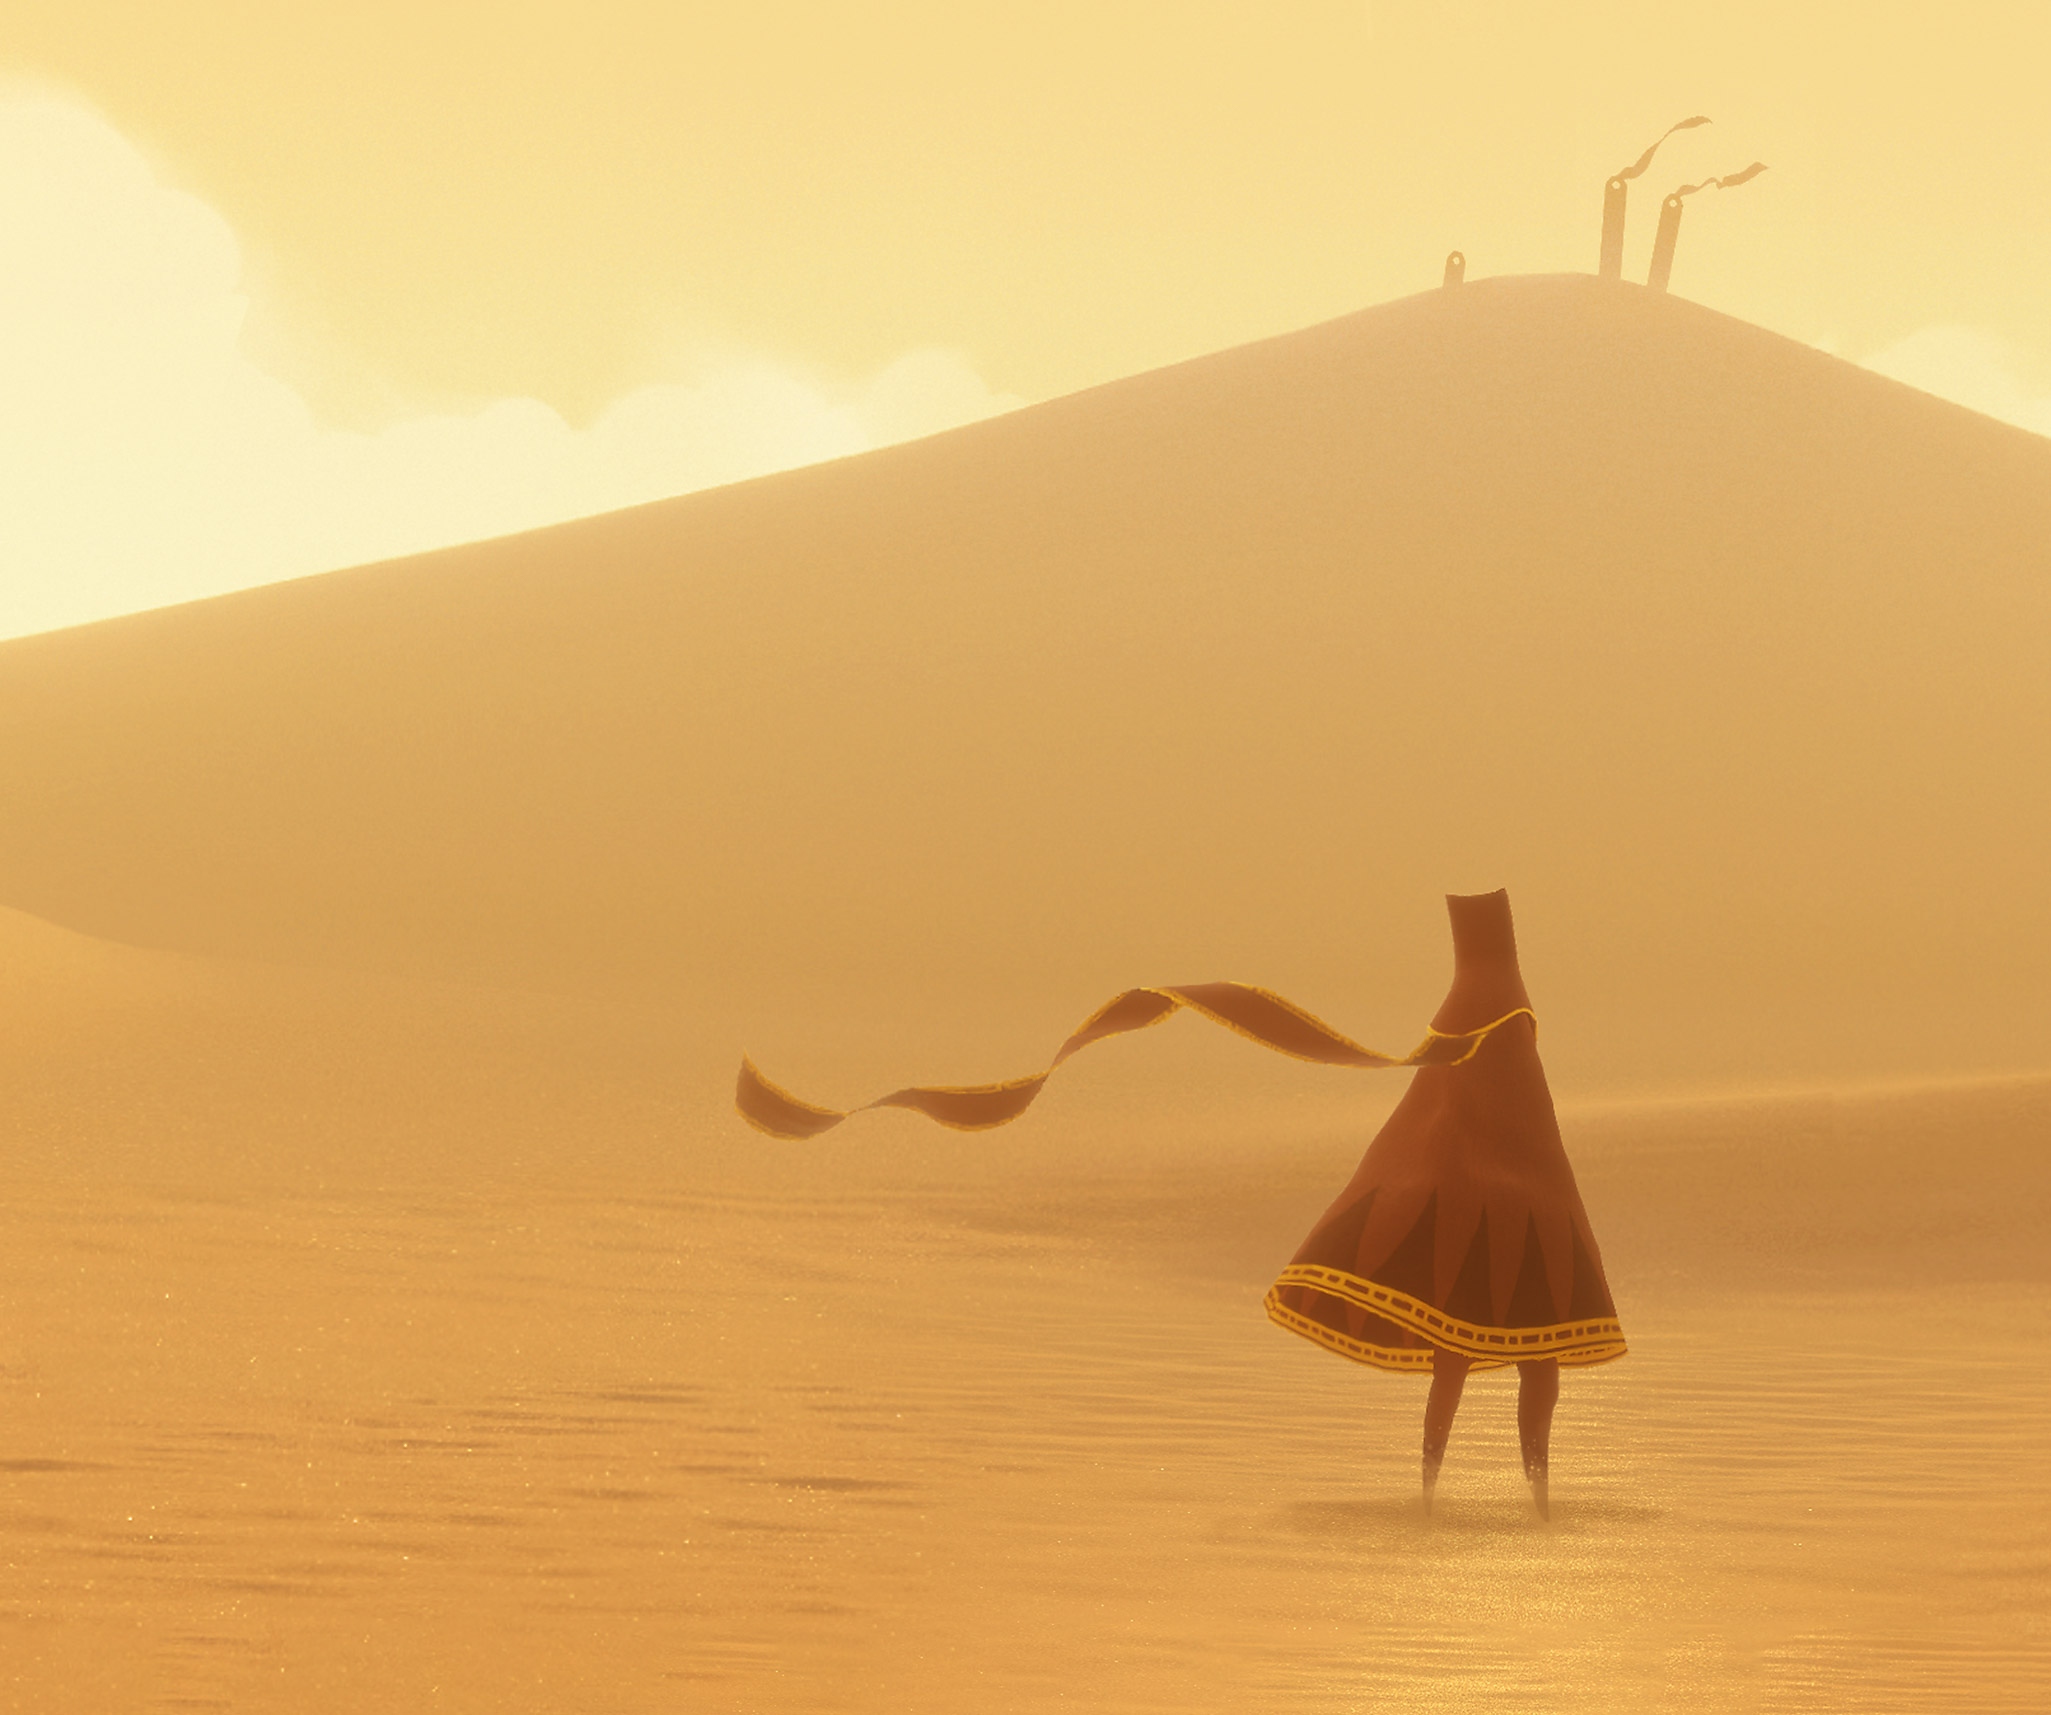 Journey-nøglegrafik med hovedfiguren "The Traveller" i en vidtstrakt, solbeskinnet ørken.